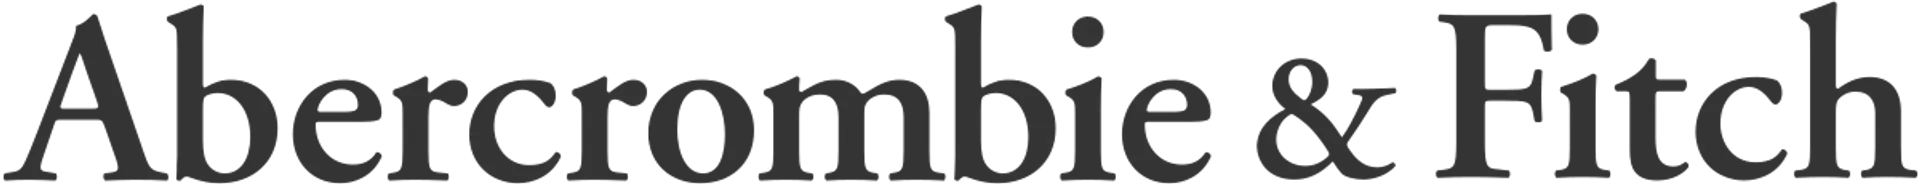 ABERCROMBIE AND FITCH logo de catálogo